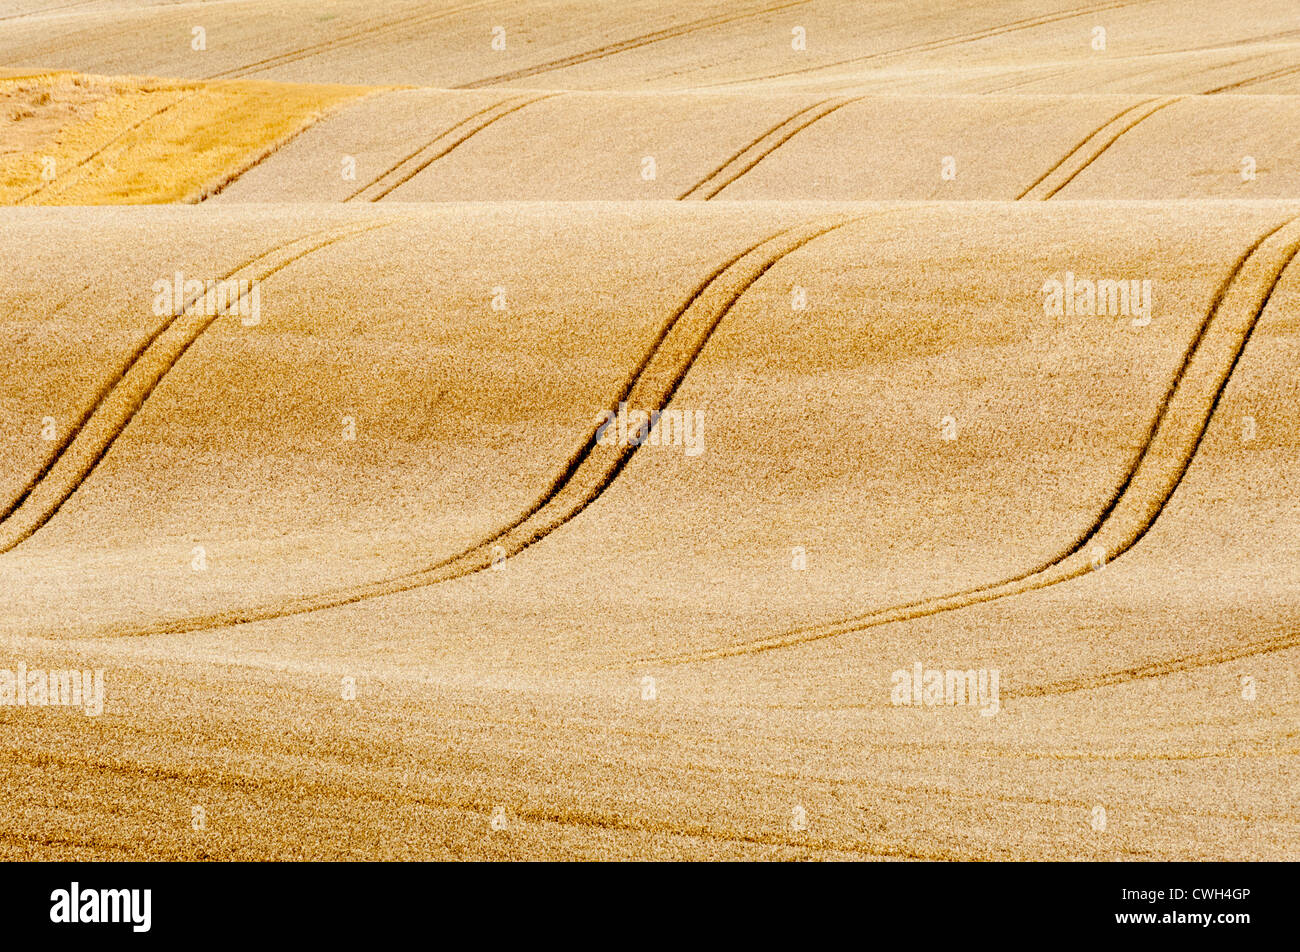 Eine hügelige Landschaft im Vereinigten Königreich mit goldener Weizen kurz vor der Ernte, zeigt Straßenbahnlinien für Landmaschinen Stockfoto